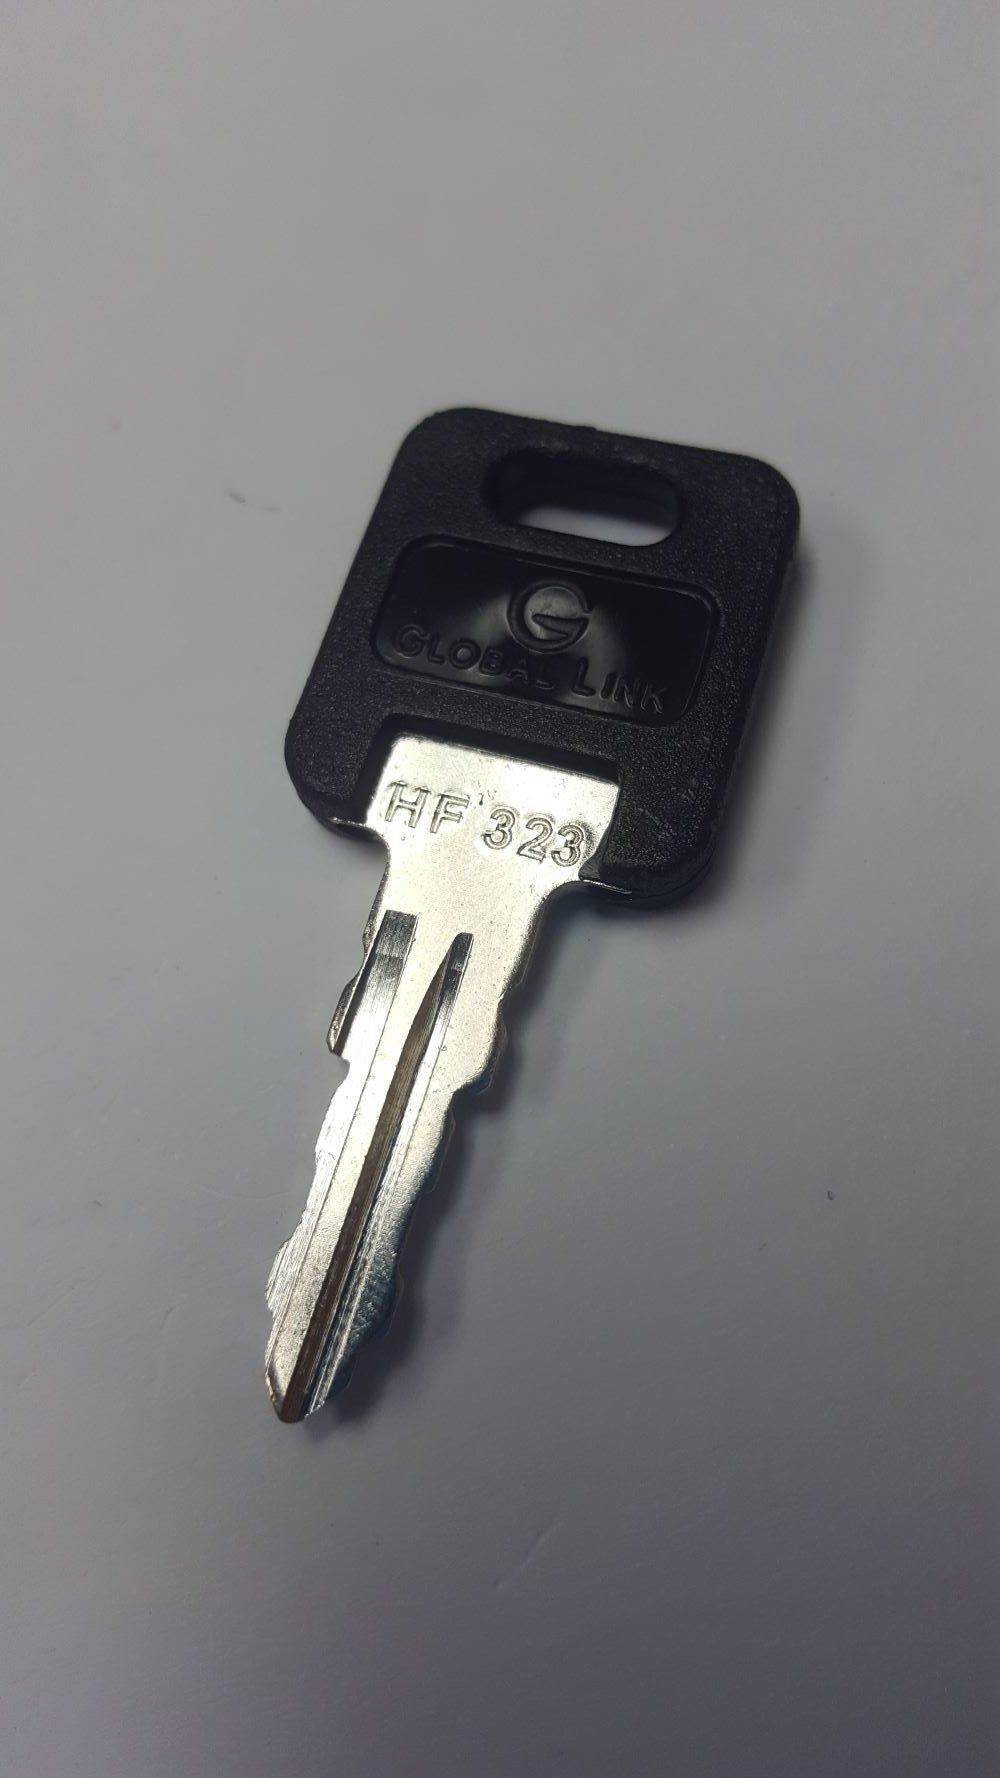 CPG KEY-HF-323 Pre-cut Stamped FIC Replacemnt HF323 Key